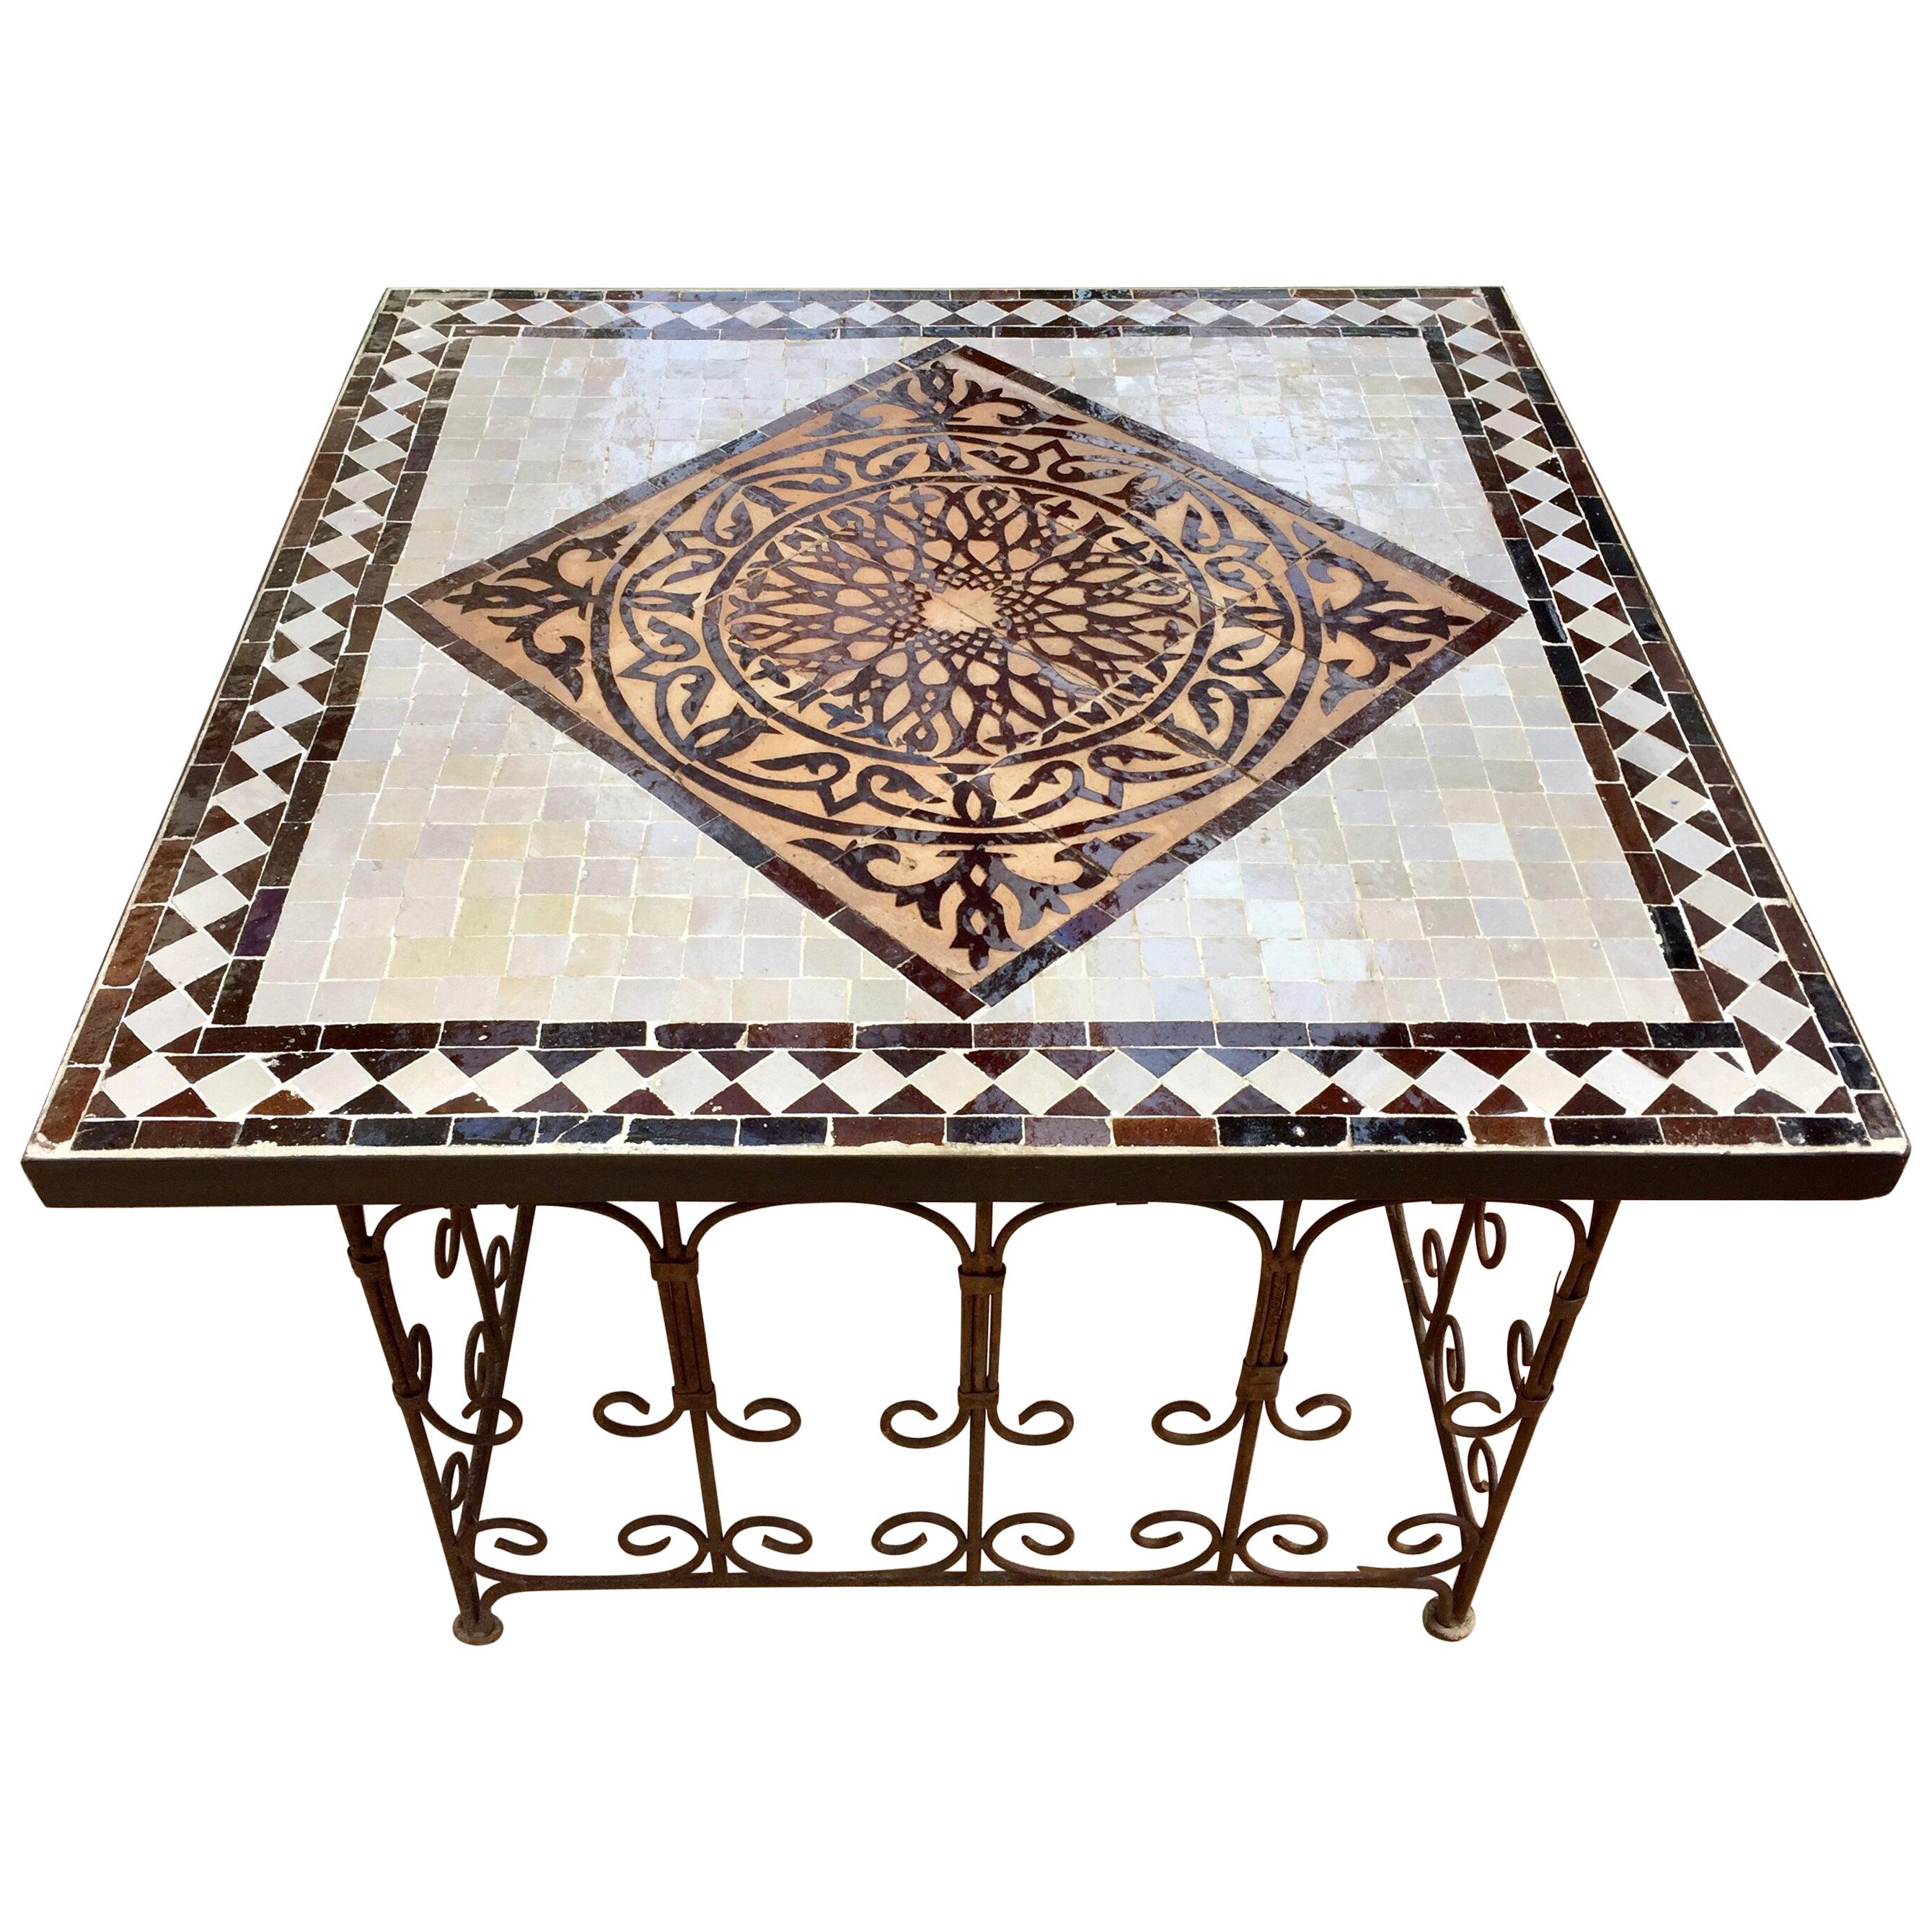 Marokkanischer Mosaik-Fliesen-Beistelltisch auf Eisensockel, Braun und Weiß